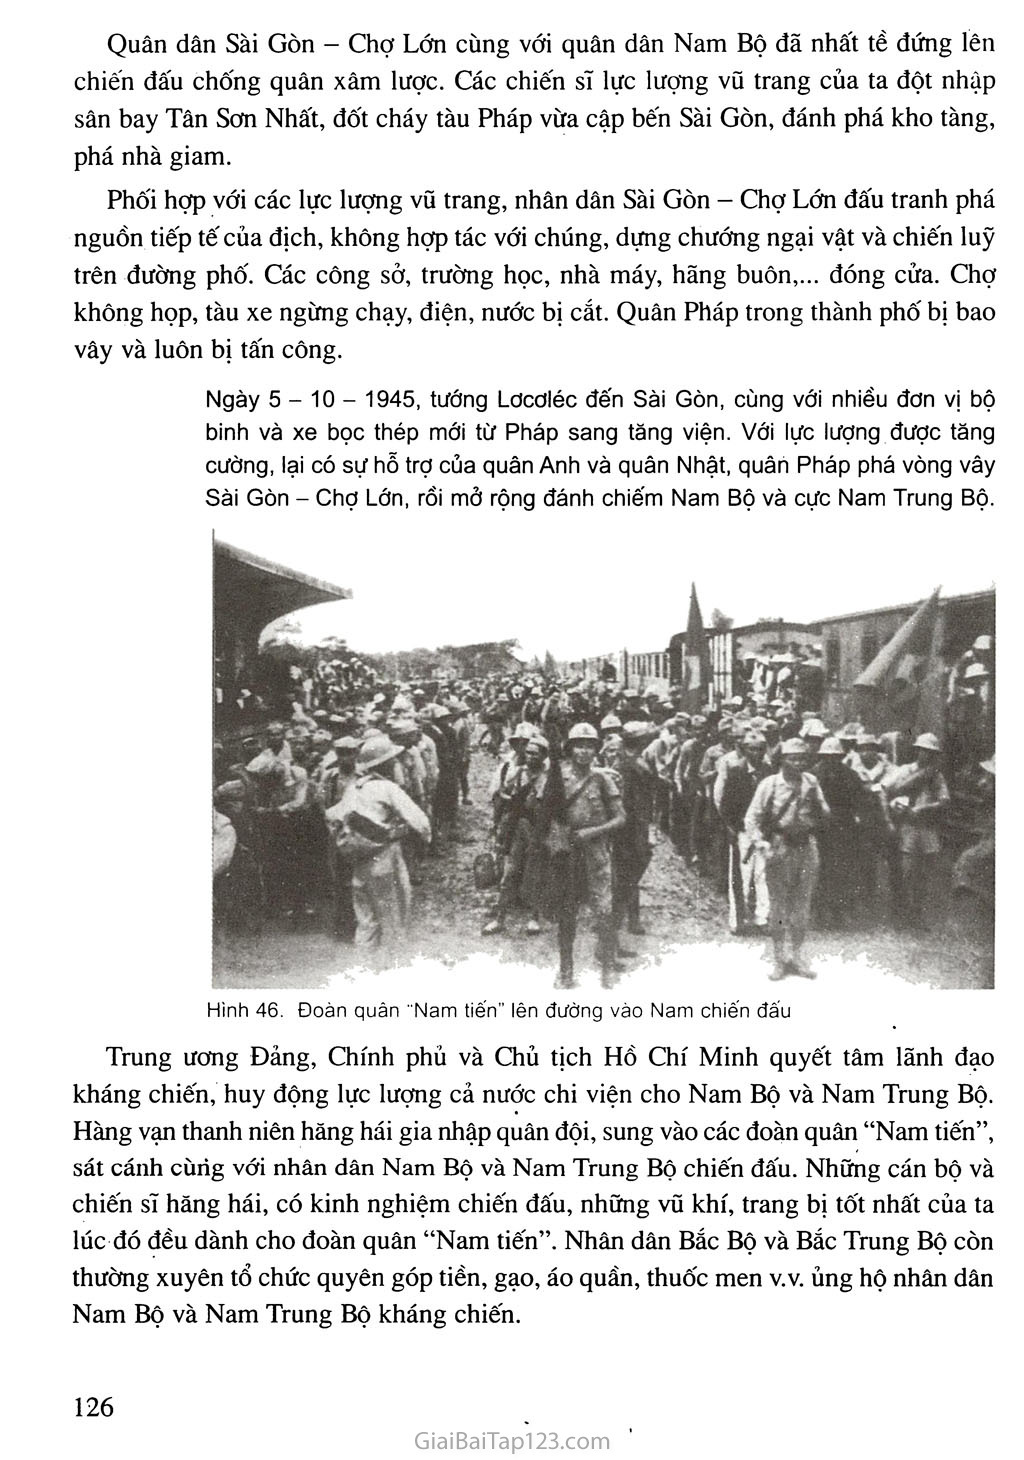 Bài 17. Nước Việt Nam Dân chủ Cộng hoà từ sau ngày 2-9-1945 đến trước ngày 19 - 12 - 1946 trang 6